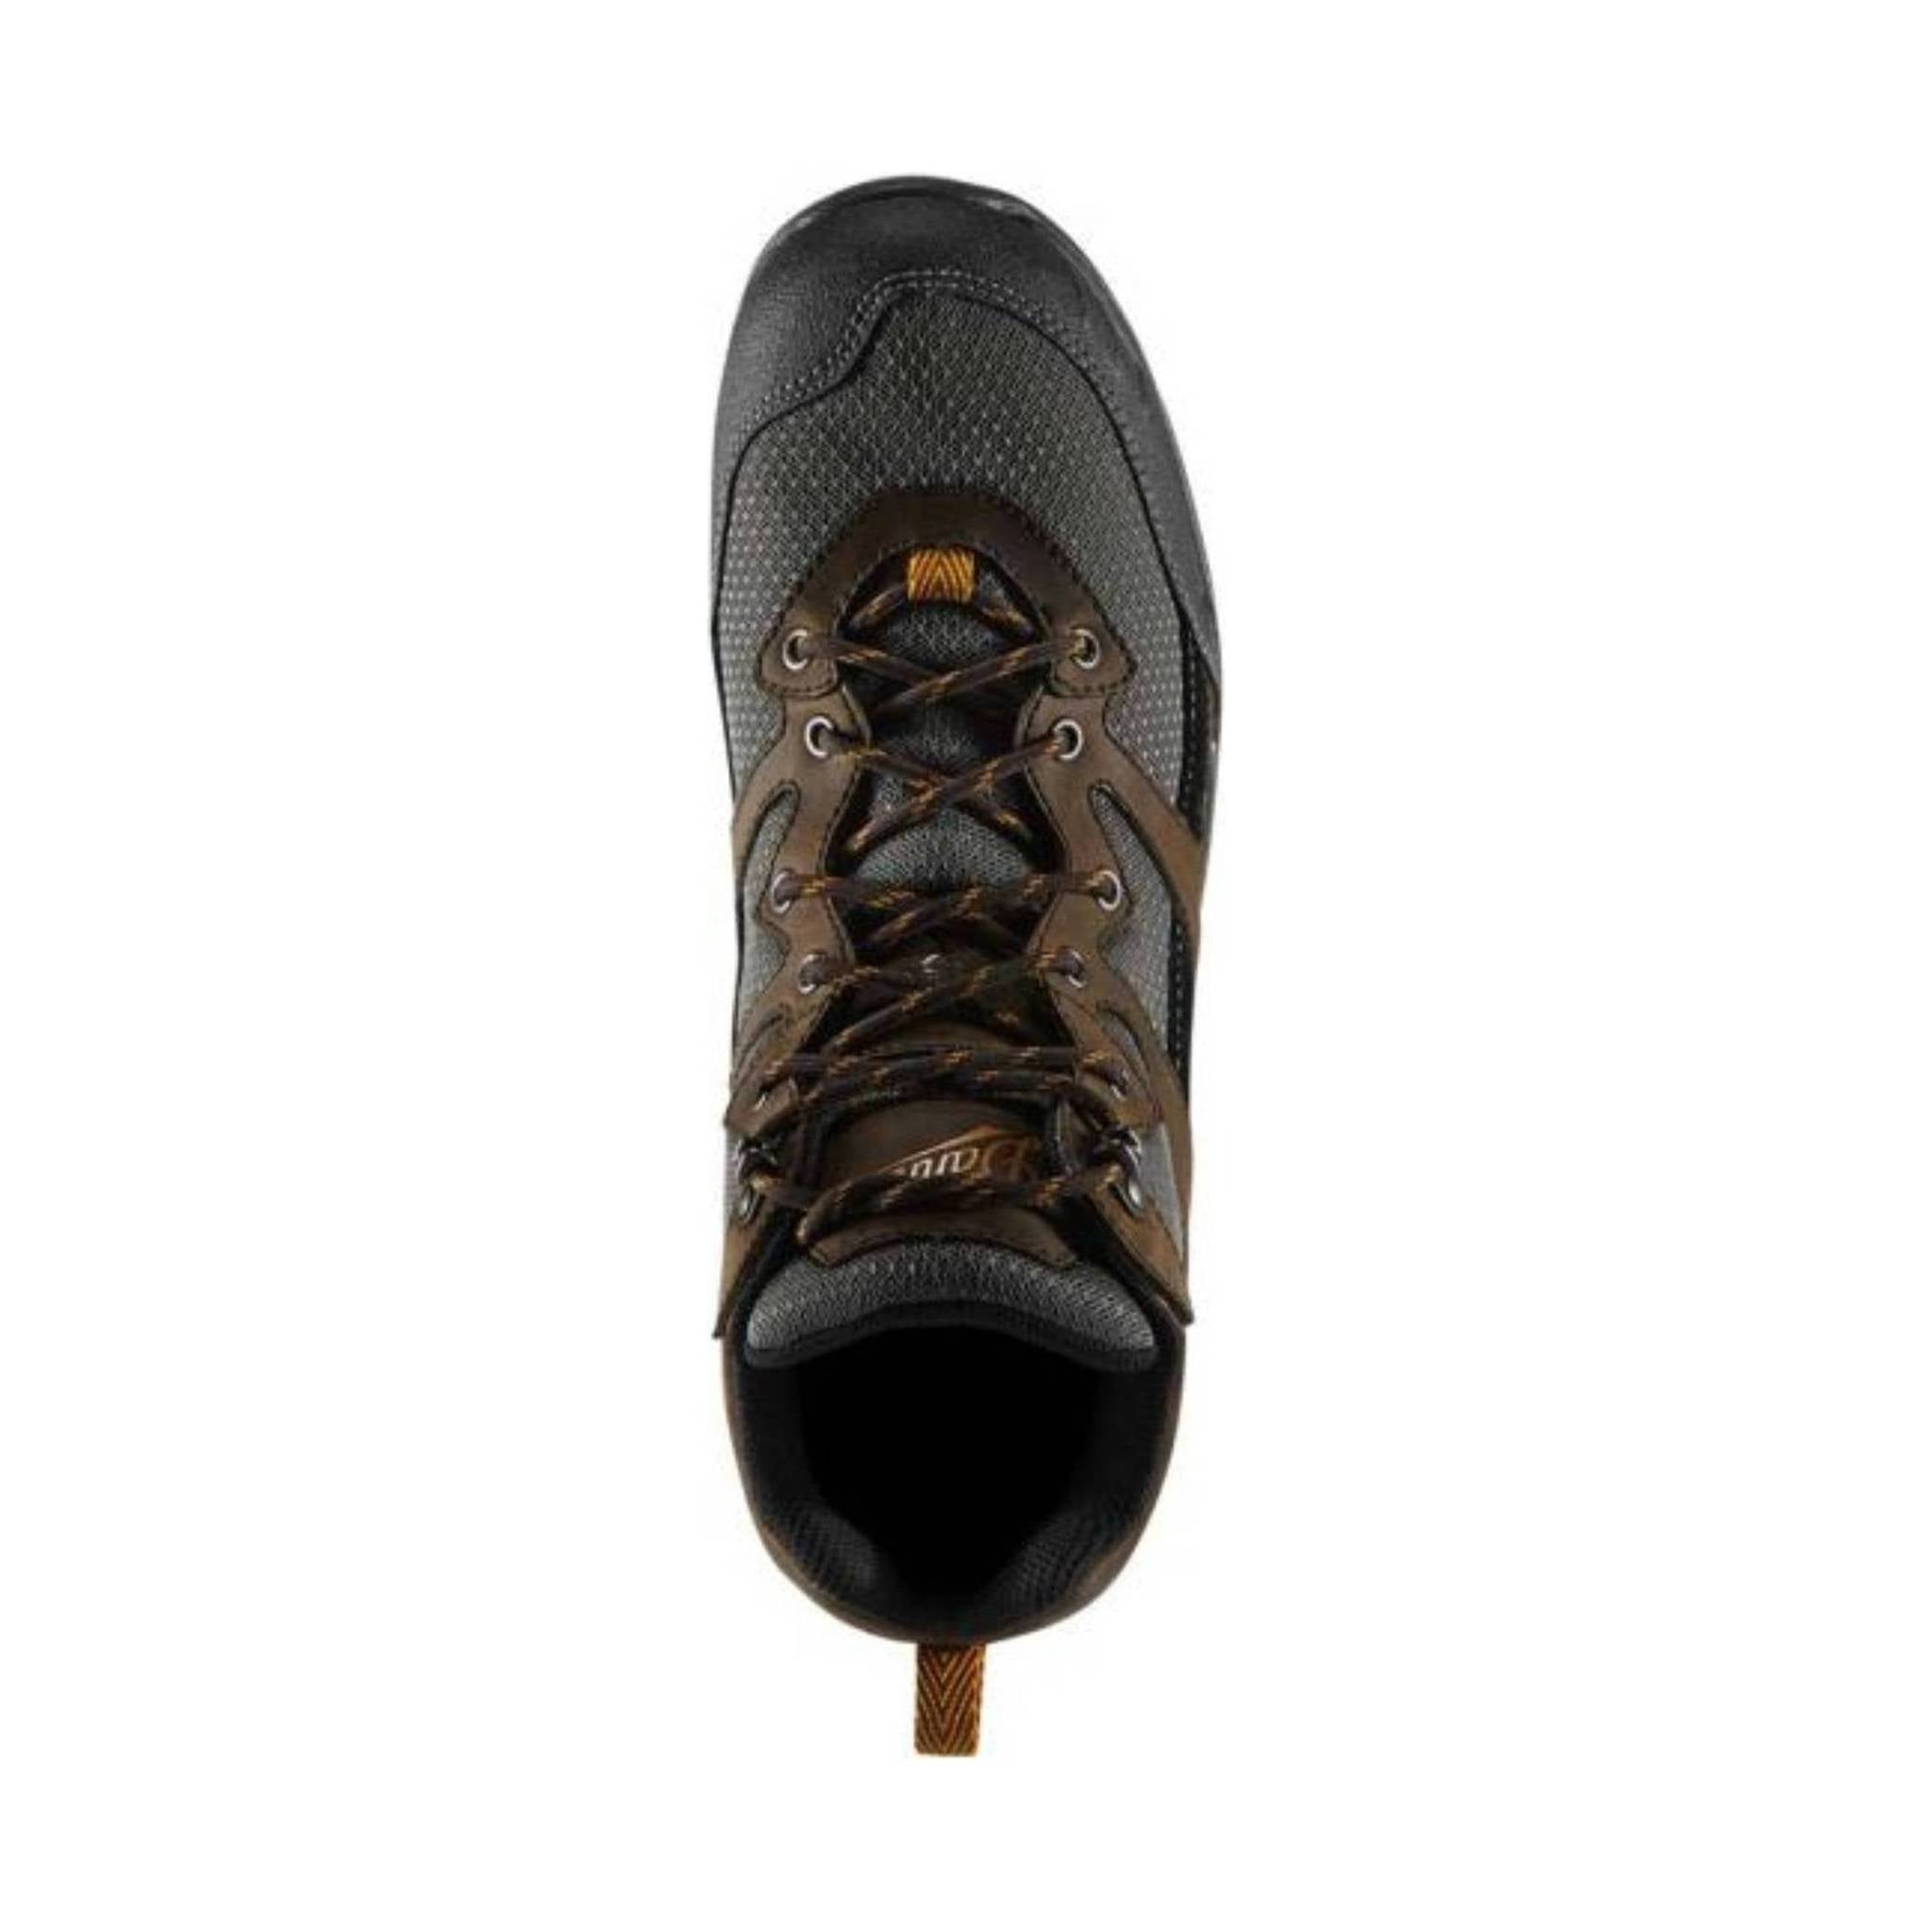 Danner Men's Springfield 4.5 Inch Non-Metallic Toe Work Boot - Brown/Orange